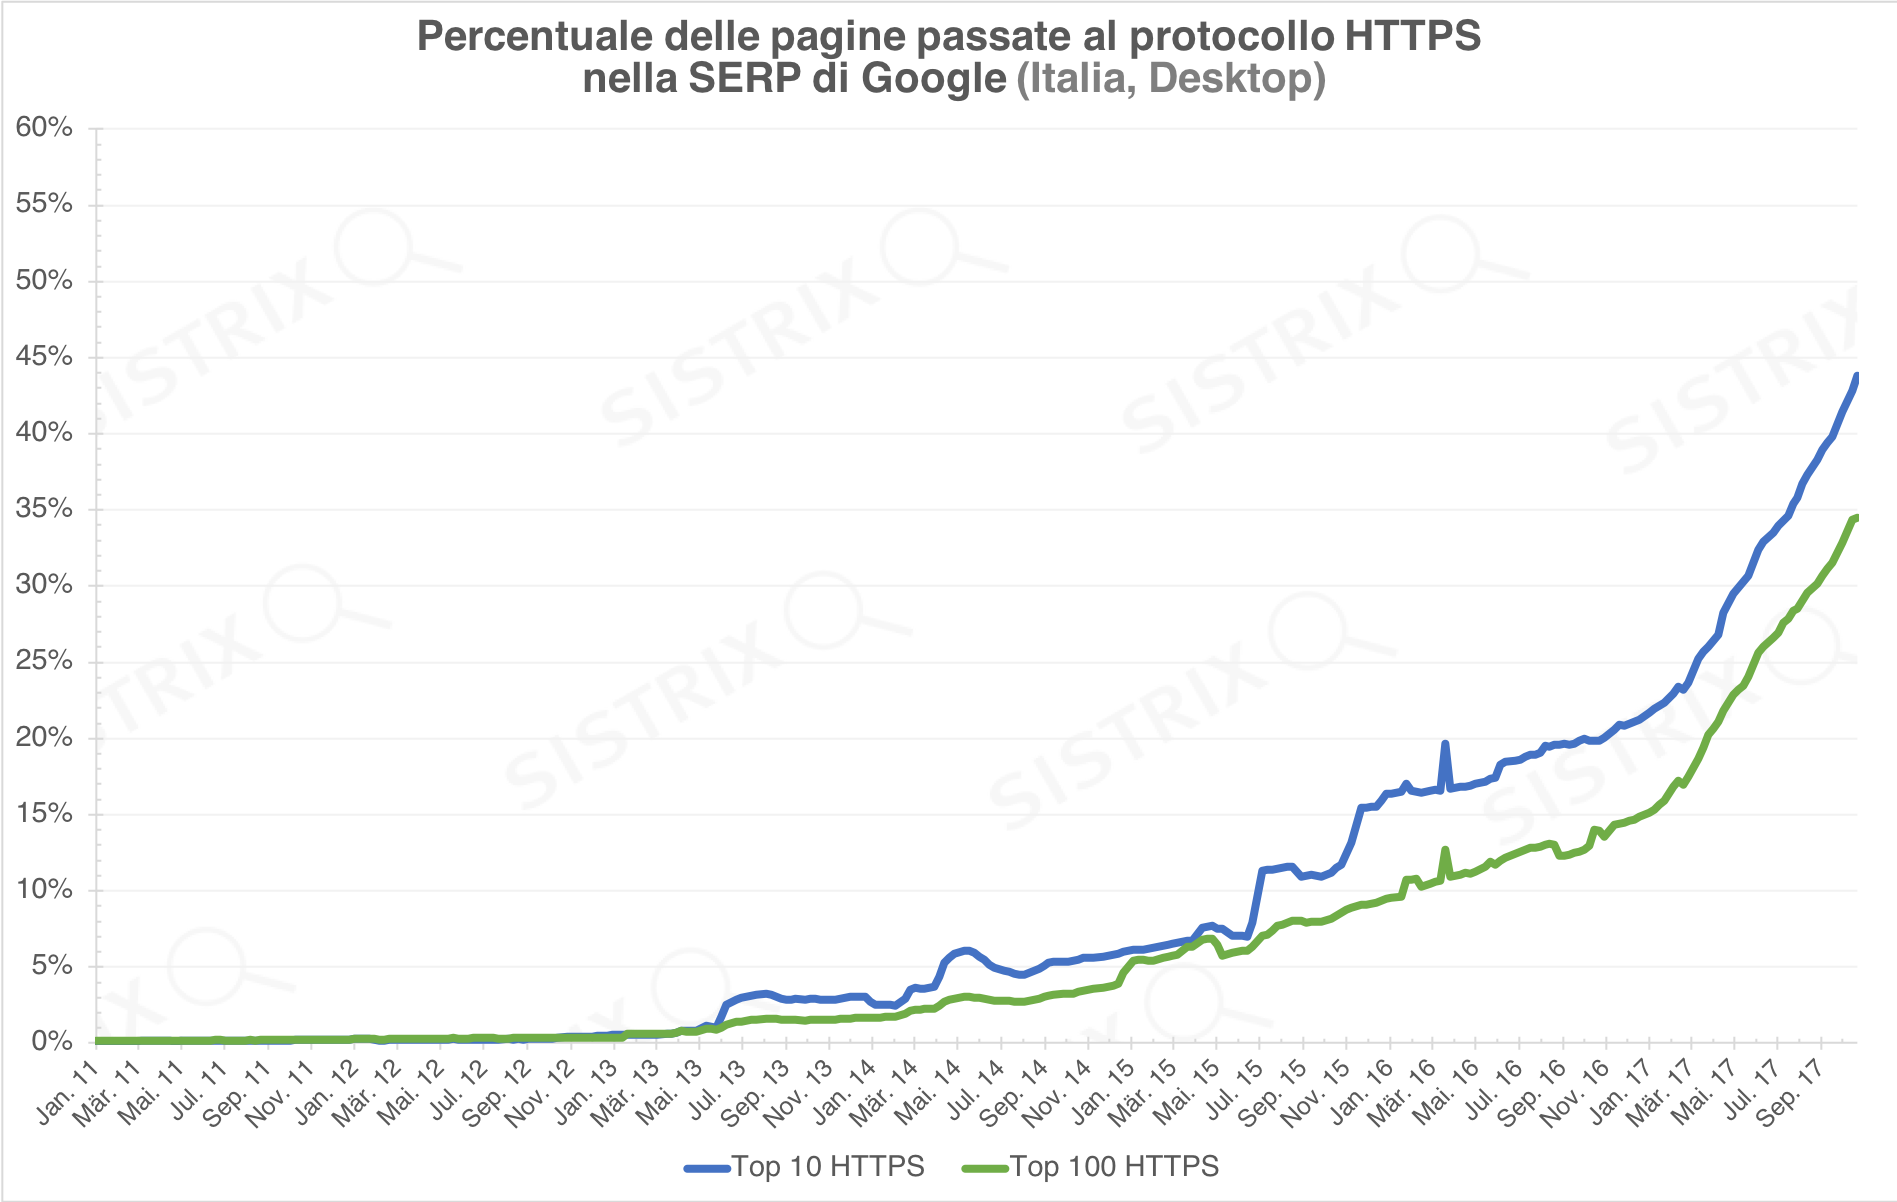 Percentuale di pagine in HTTPS fino al 2017